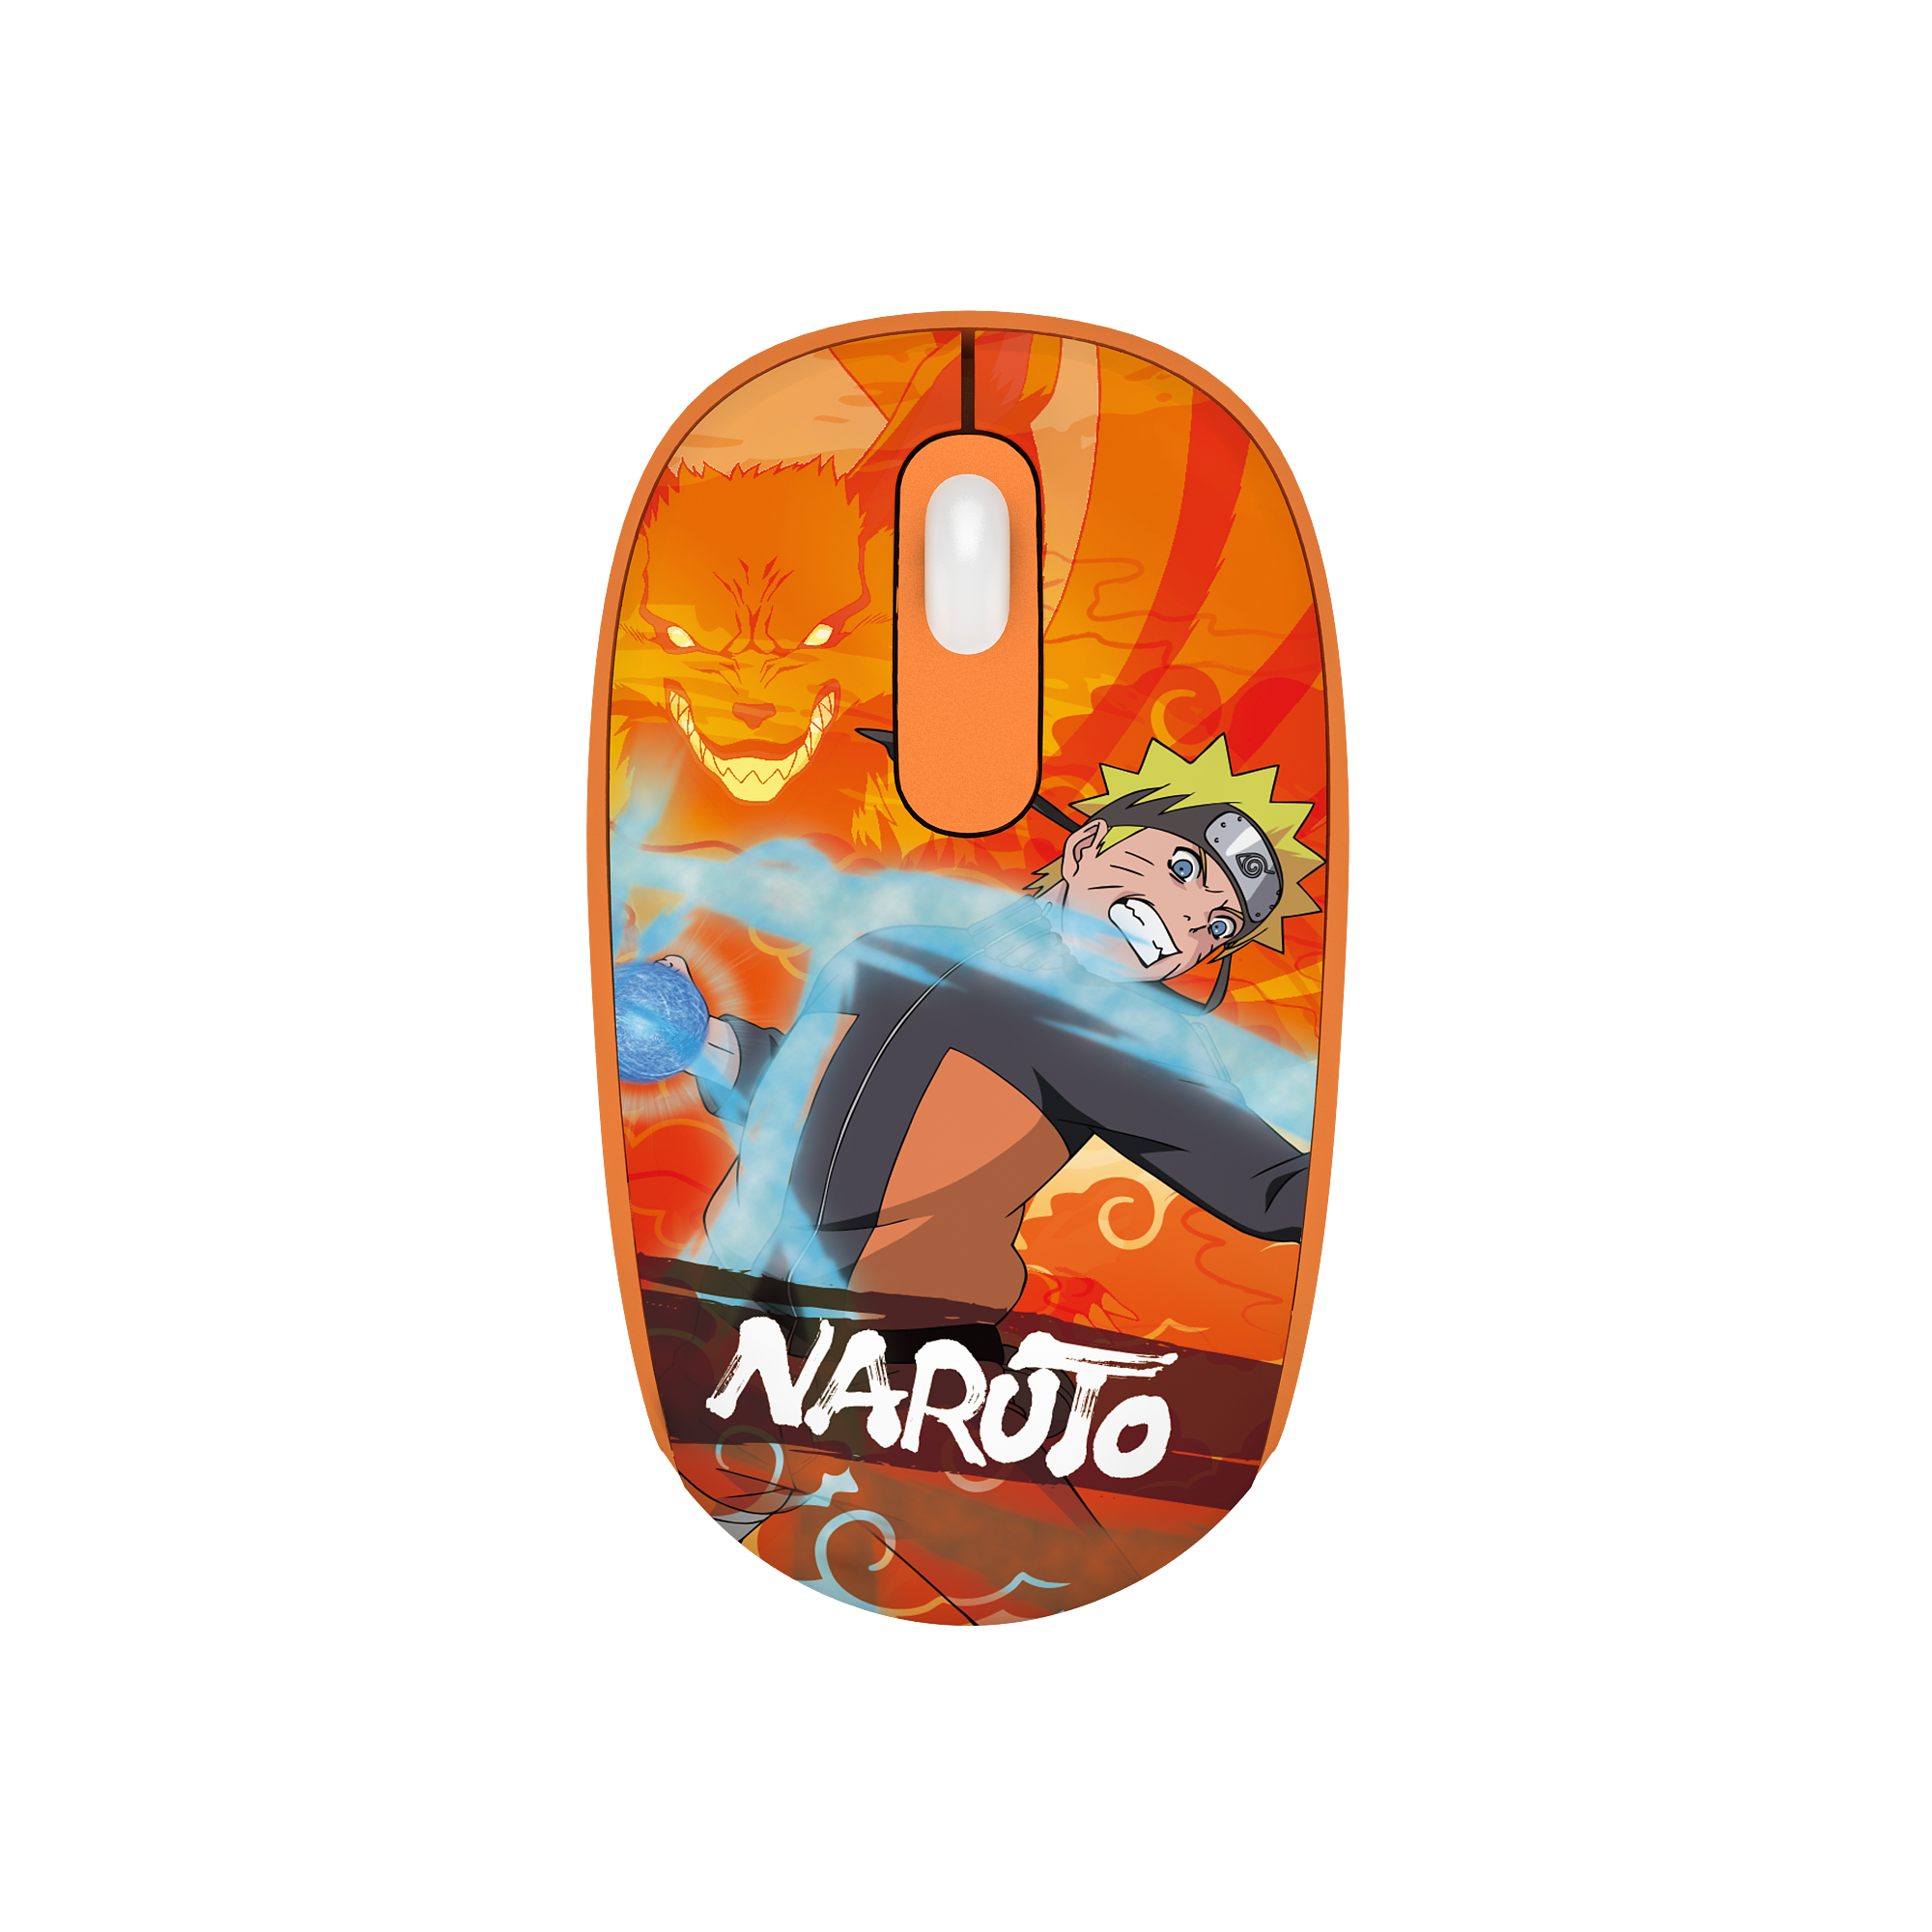 Naruto Shippuden Smart 1 kabellose Maus – Naruto